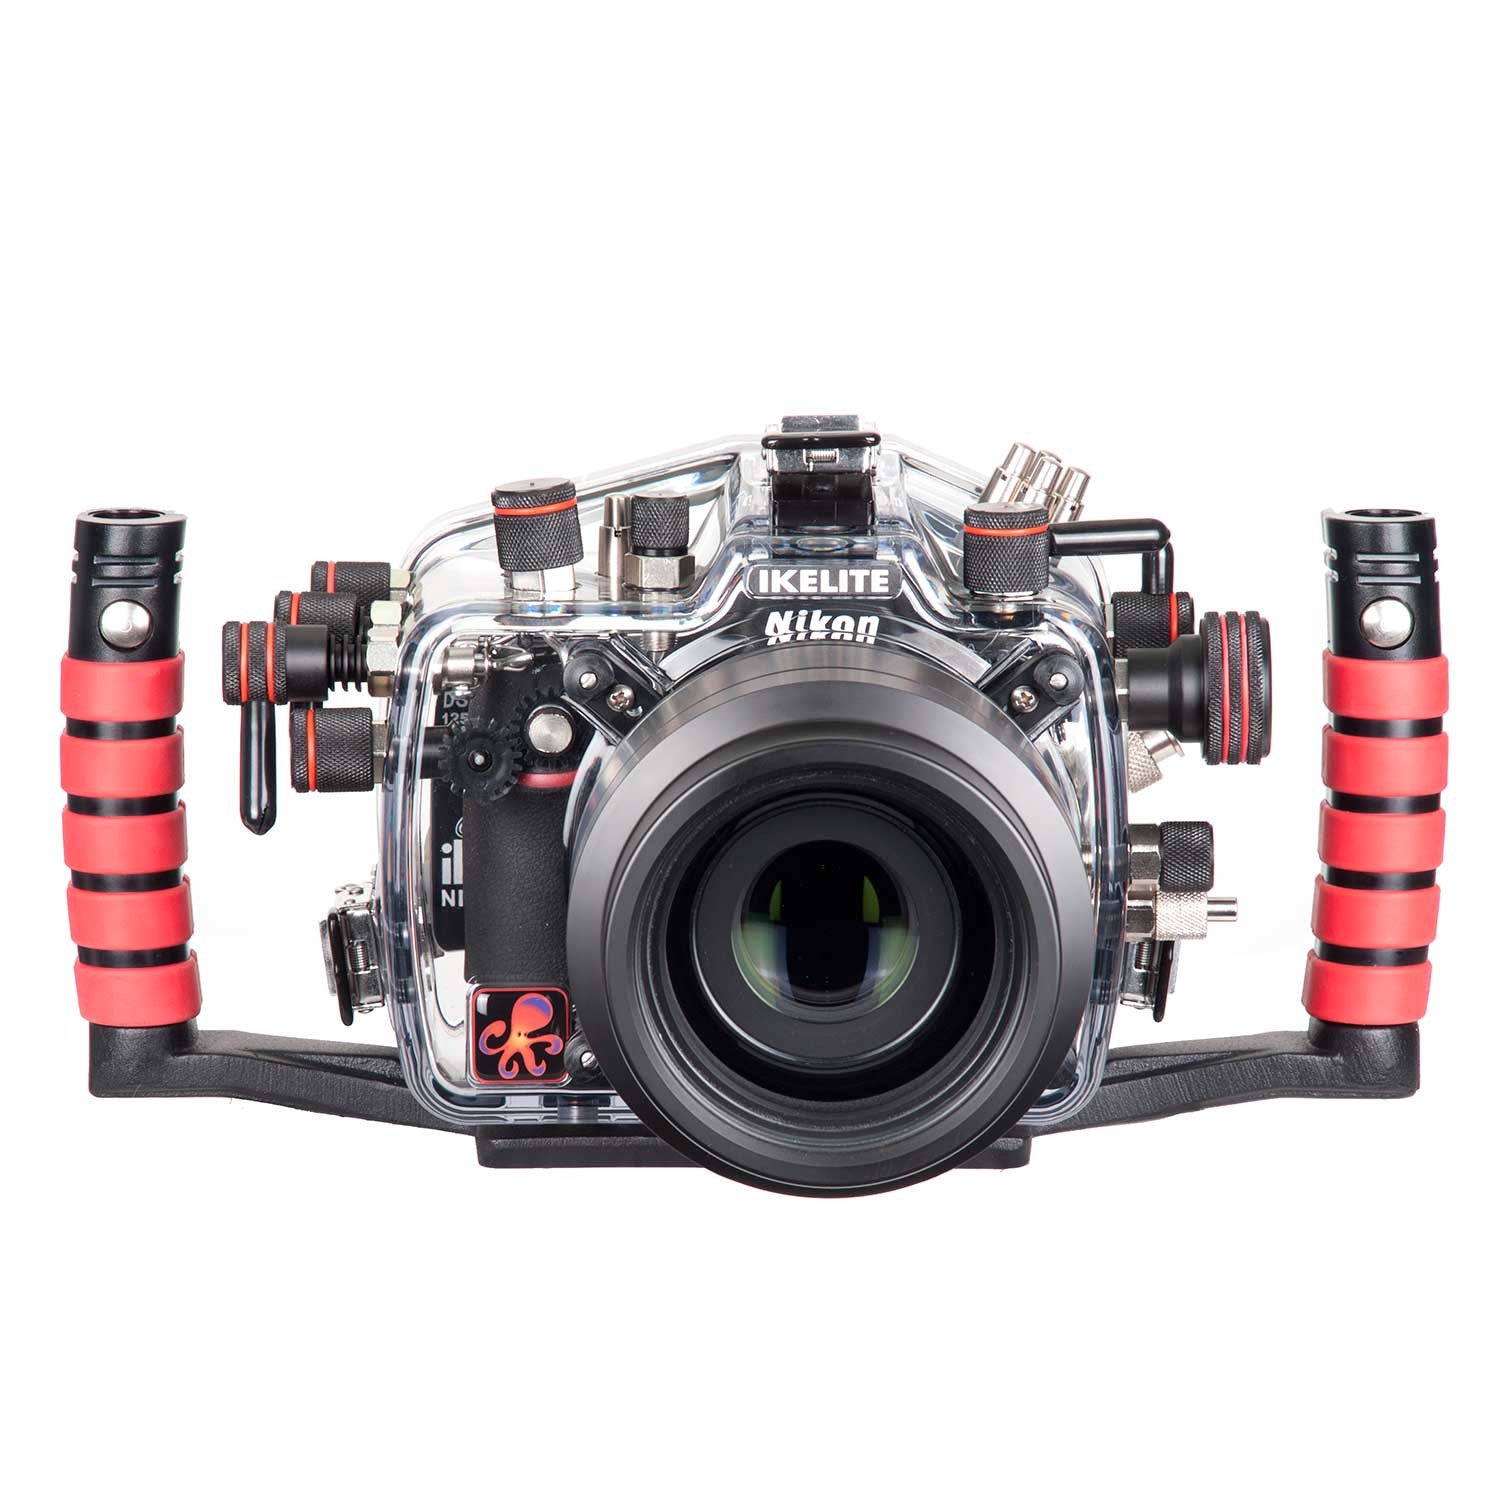 200FL Underwater TTL Housing for Nikon D800 D800E DSLR Cameras